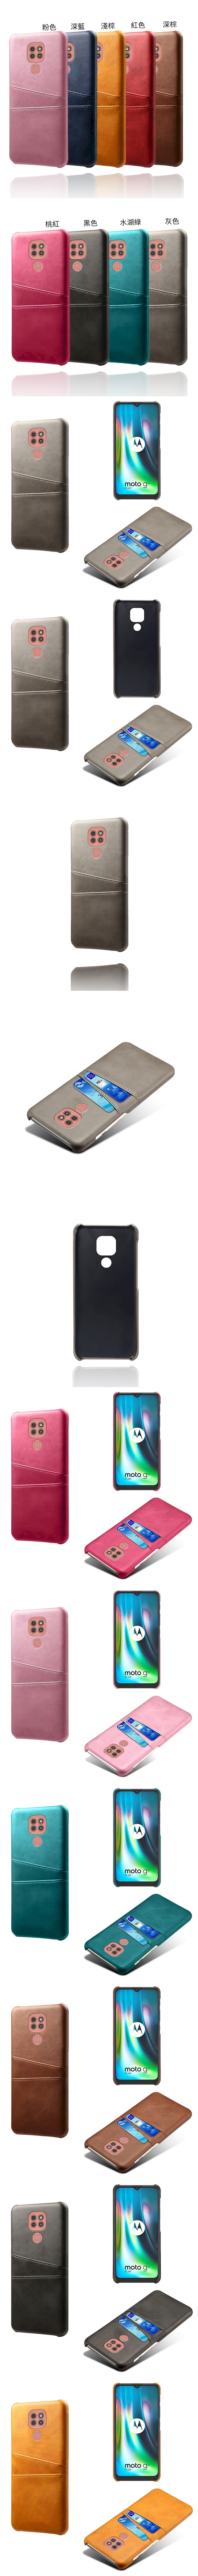 Apple IPhone 11 Pro Max i11 皮革保護殼(PLAIN) - 牛皮仿真皮紋雙插卡手機殼背蓋手機套